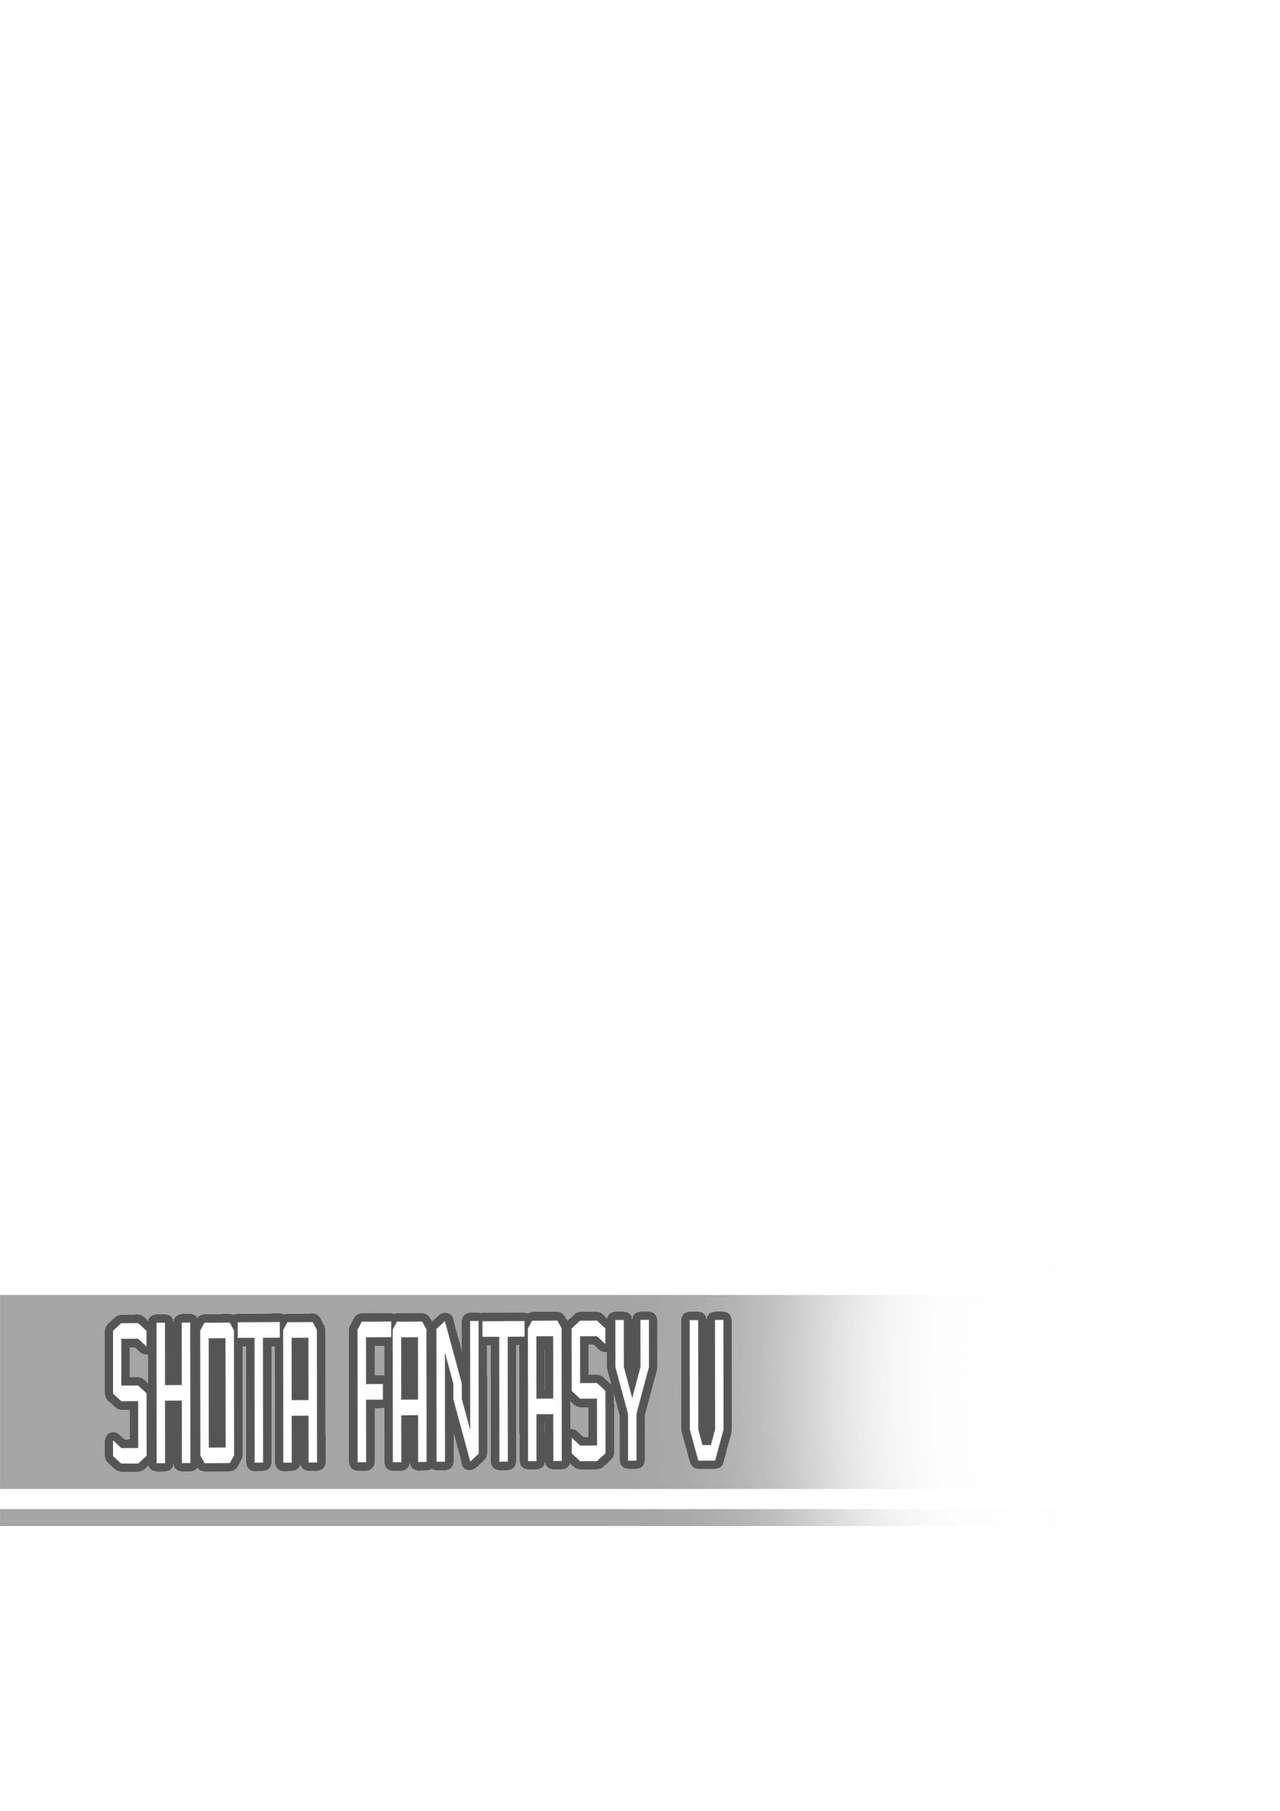 Shota Fantasy V 26